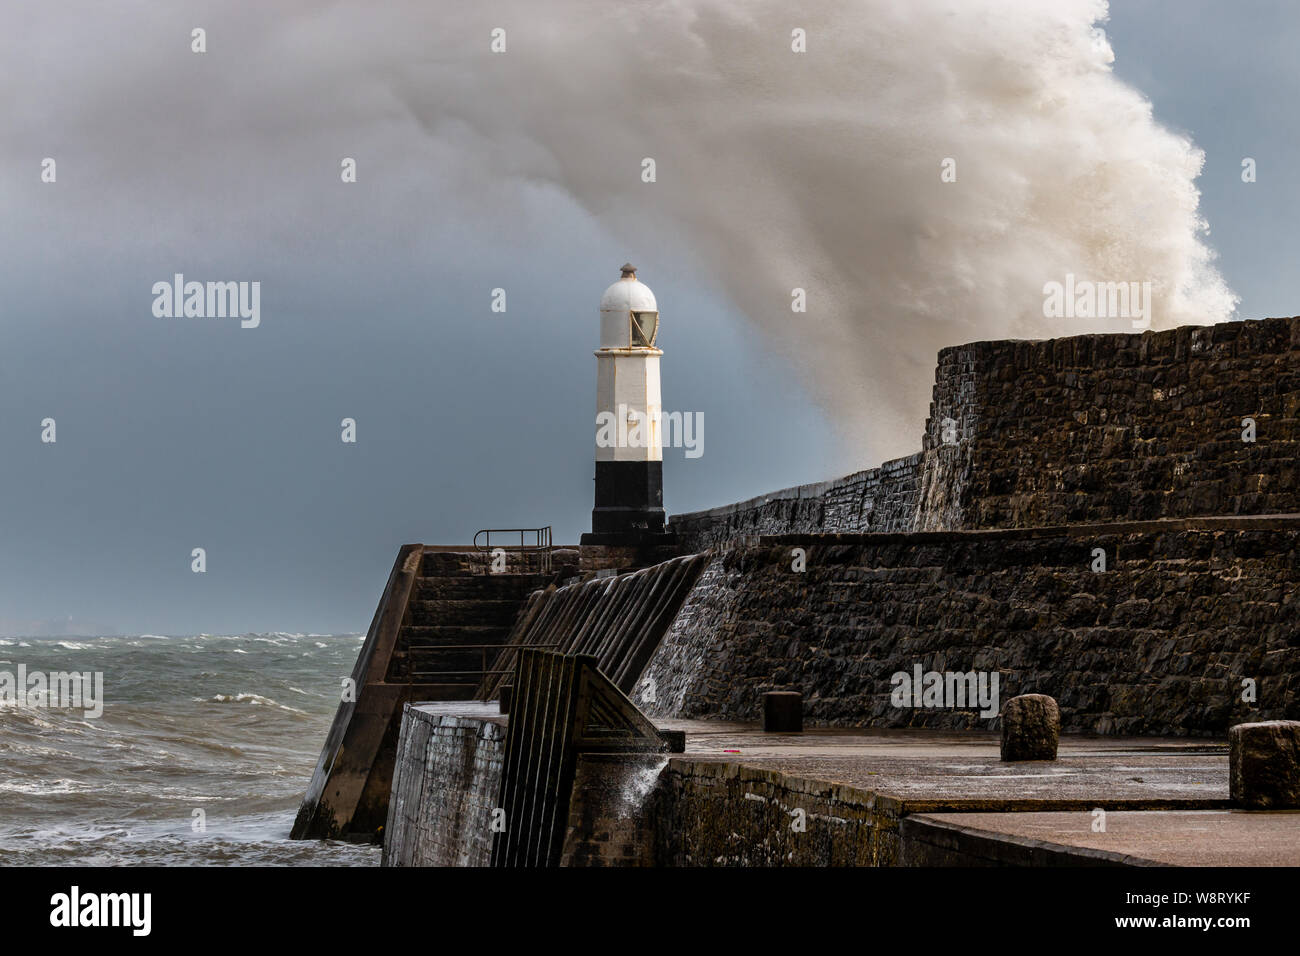 Ozean Wellen brechen über einen Hafen Wand neben einem Leuchtturm an einem stürmischen Tag (Porthcawl, Wales, Vereinigtes Königreich) Stockfoto